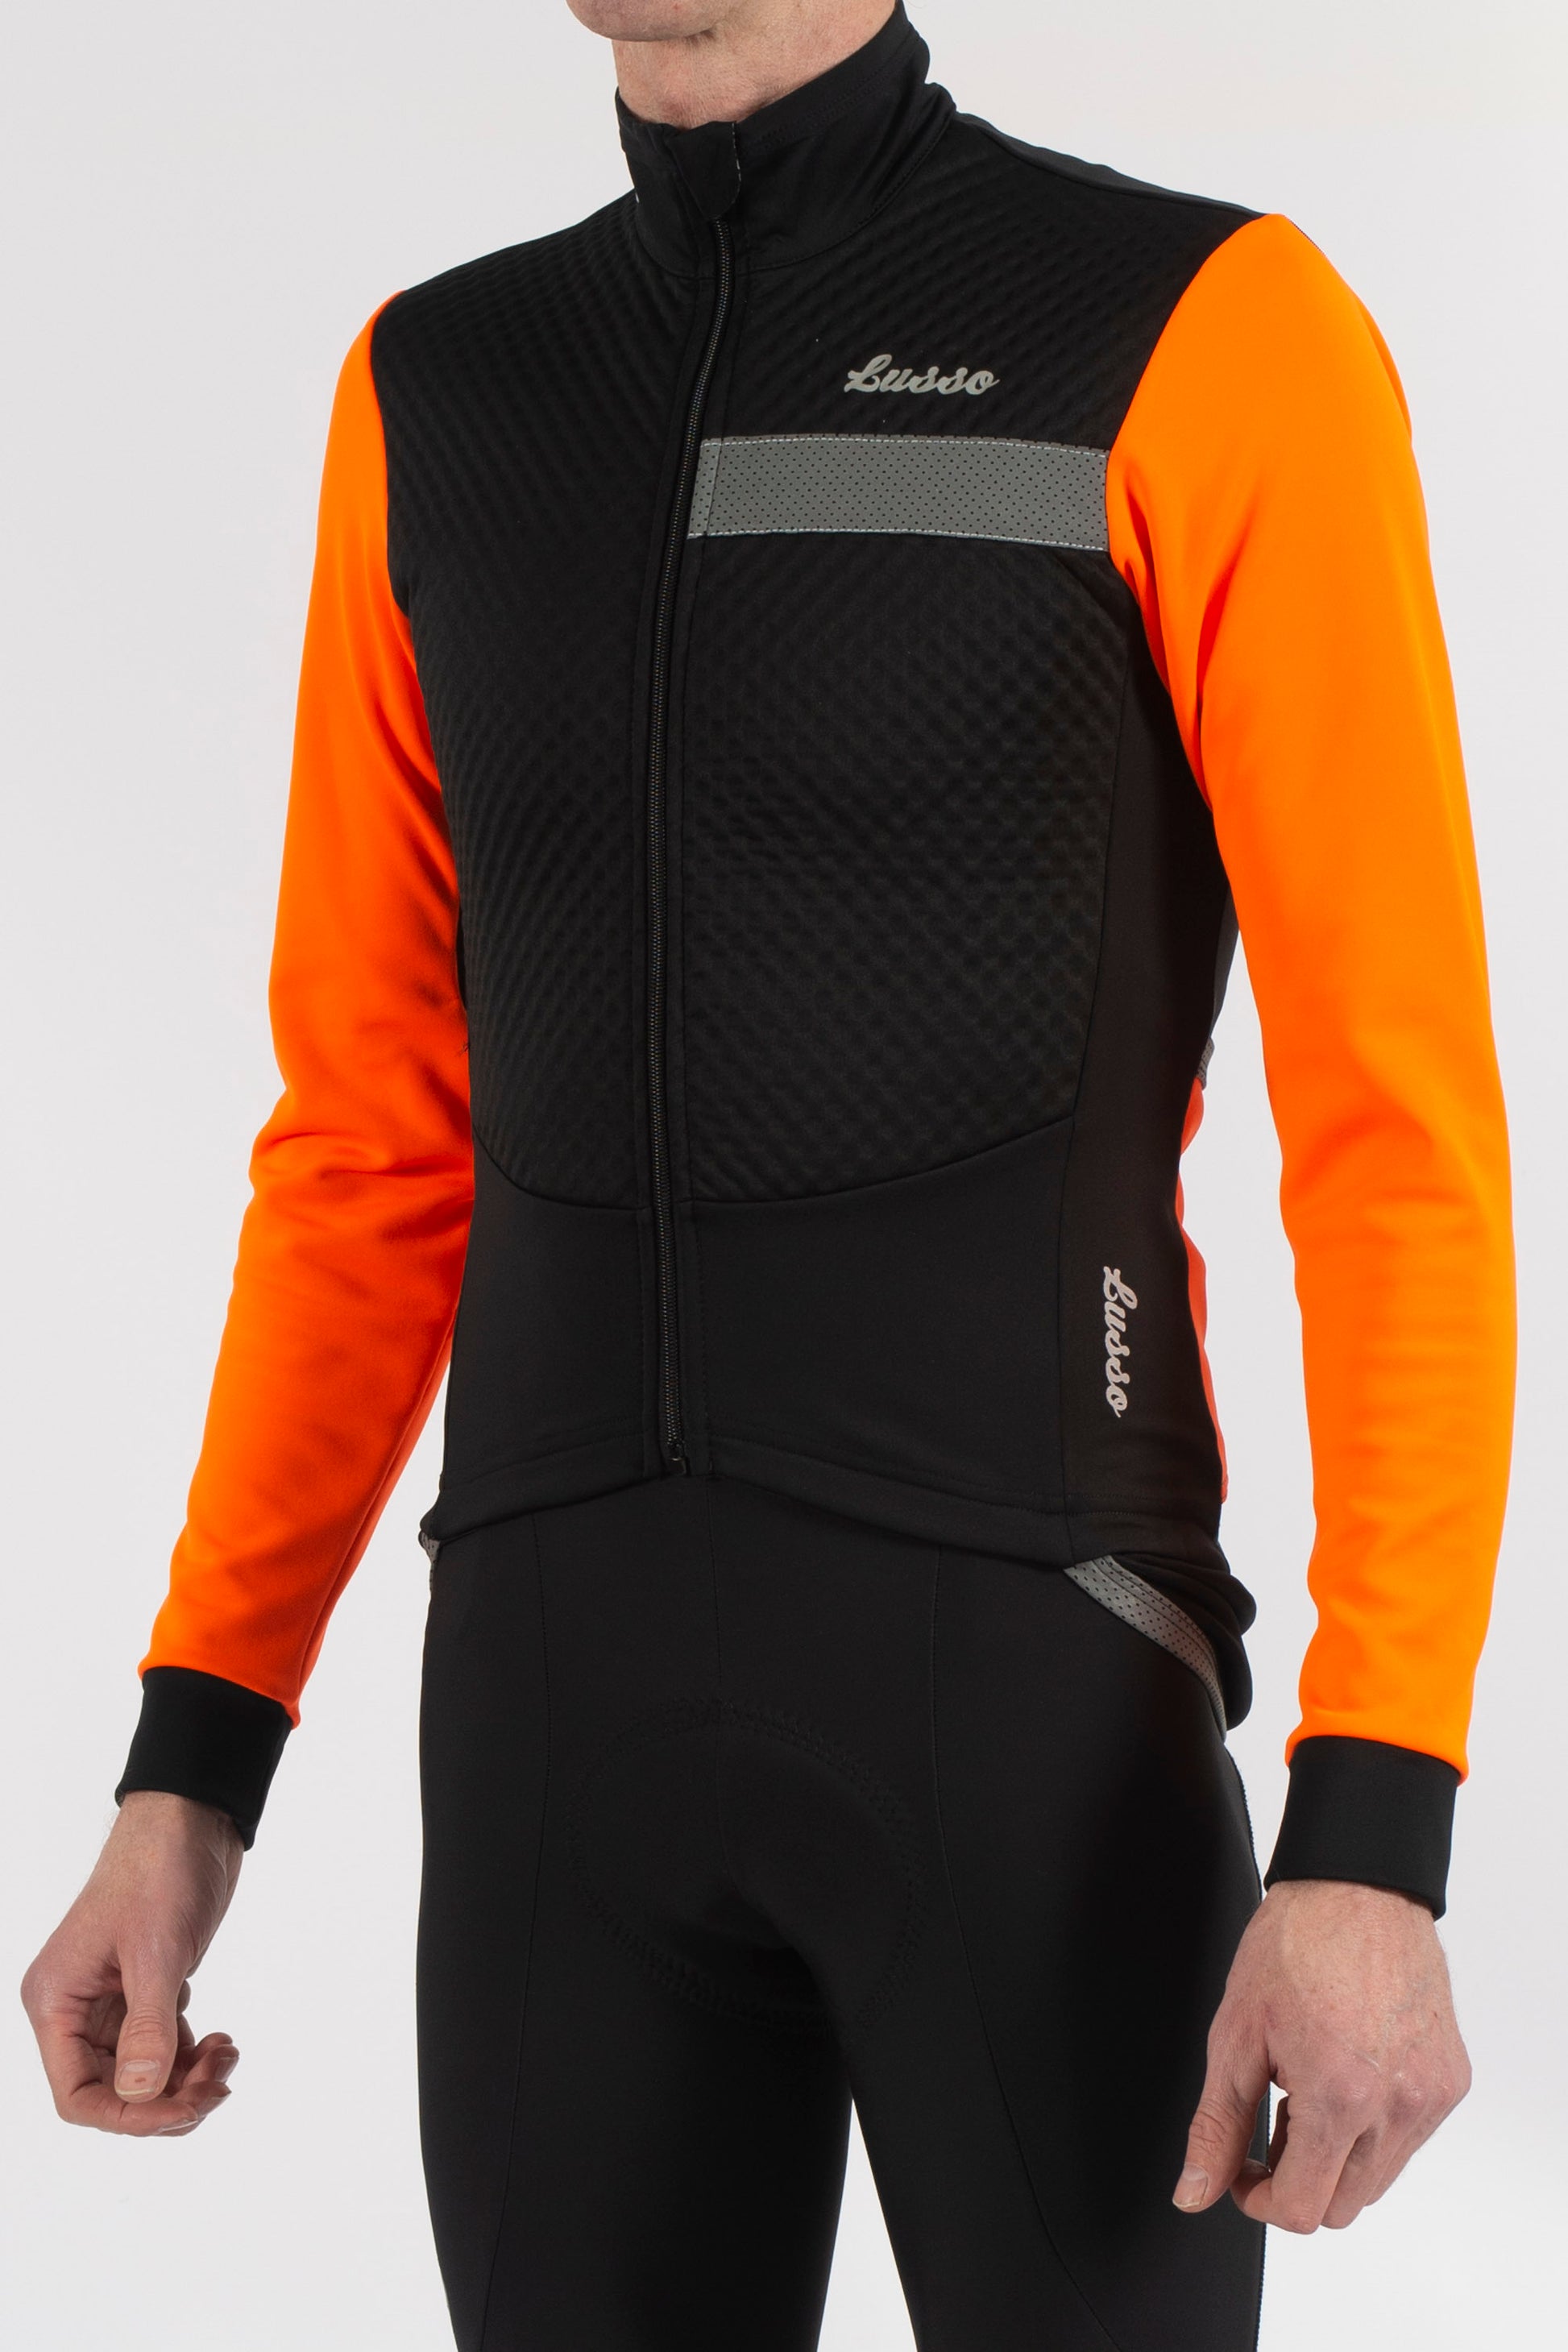 Aqua Pro Extreme Jacket - Orange - Lusso Cycle Wear